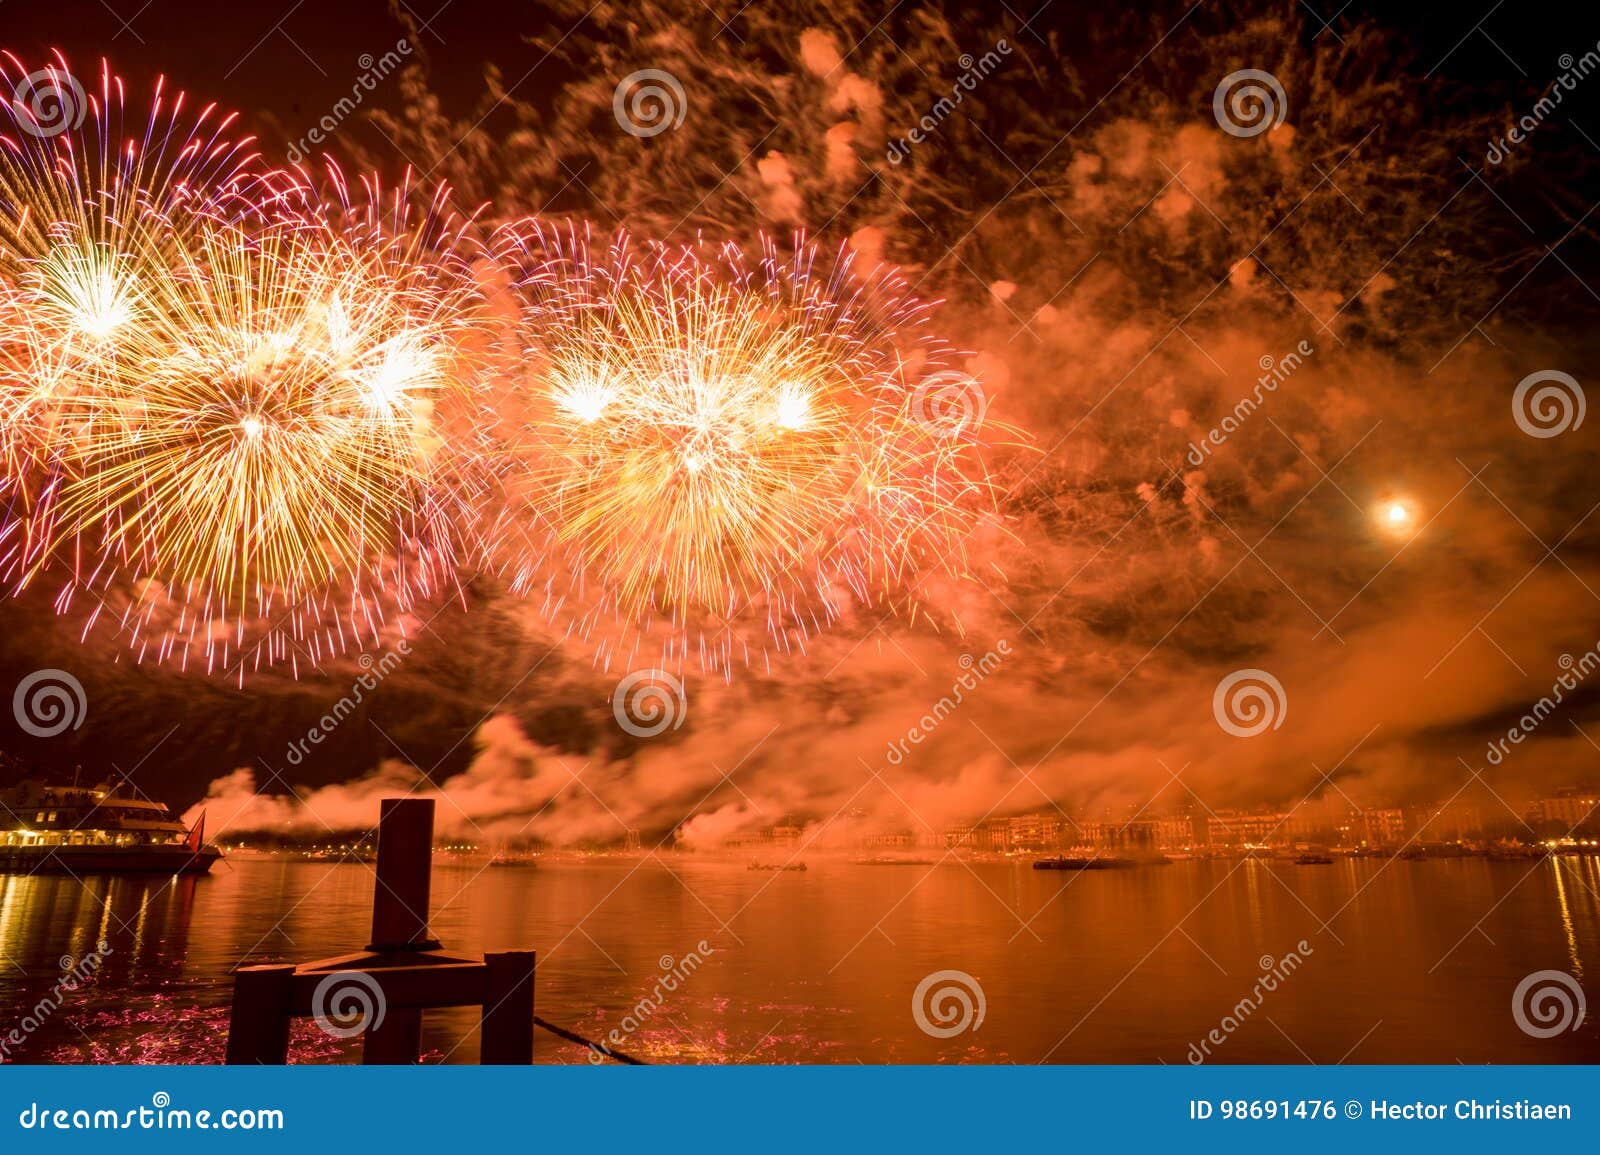 Geneva Switzerland Fireworks on the Lake Stock Photo Image of burst